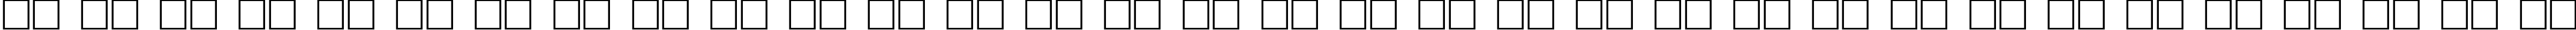 Пример написания русского алфавита шрифтом Antiqua 140b